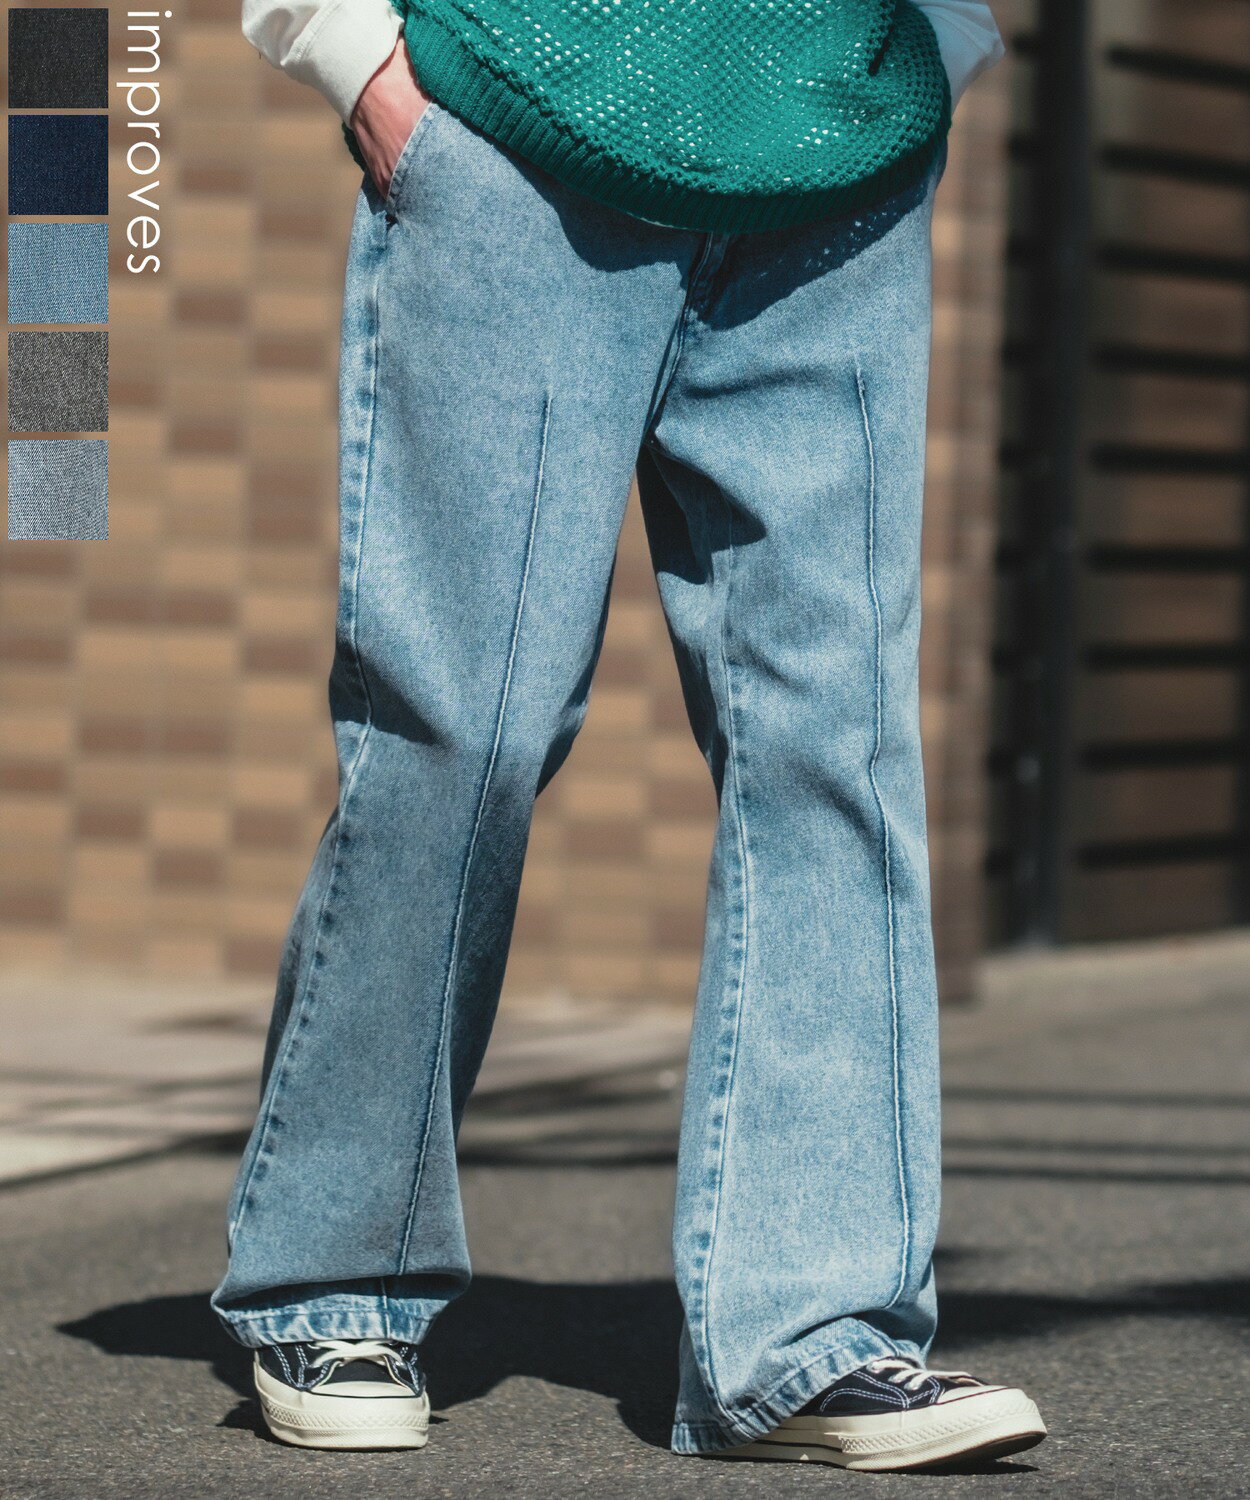 【SALE / 27%OFF】デニムパンツ メンズ レディース フレアパンツ ピンタック センタープレス パンタロン ベルボトム ジーンズ きれいめ アメカジ カジュアル シンプル ストリート 韓国ファッション 古着MIX ケミカル インディゴ ブルー ブラック